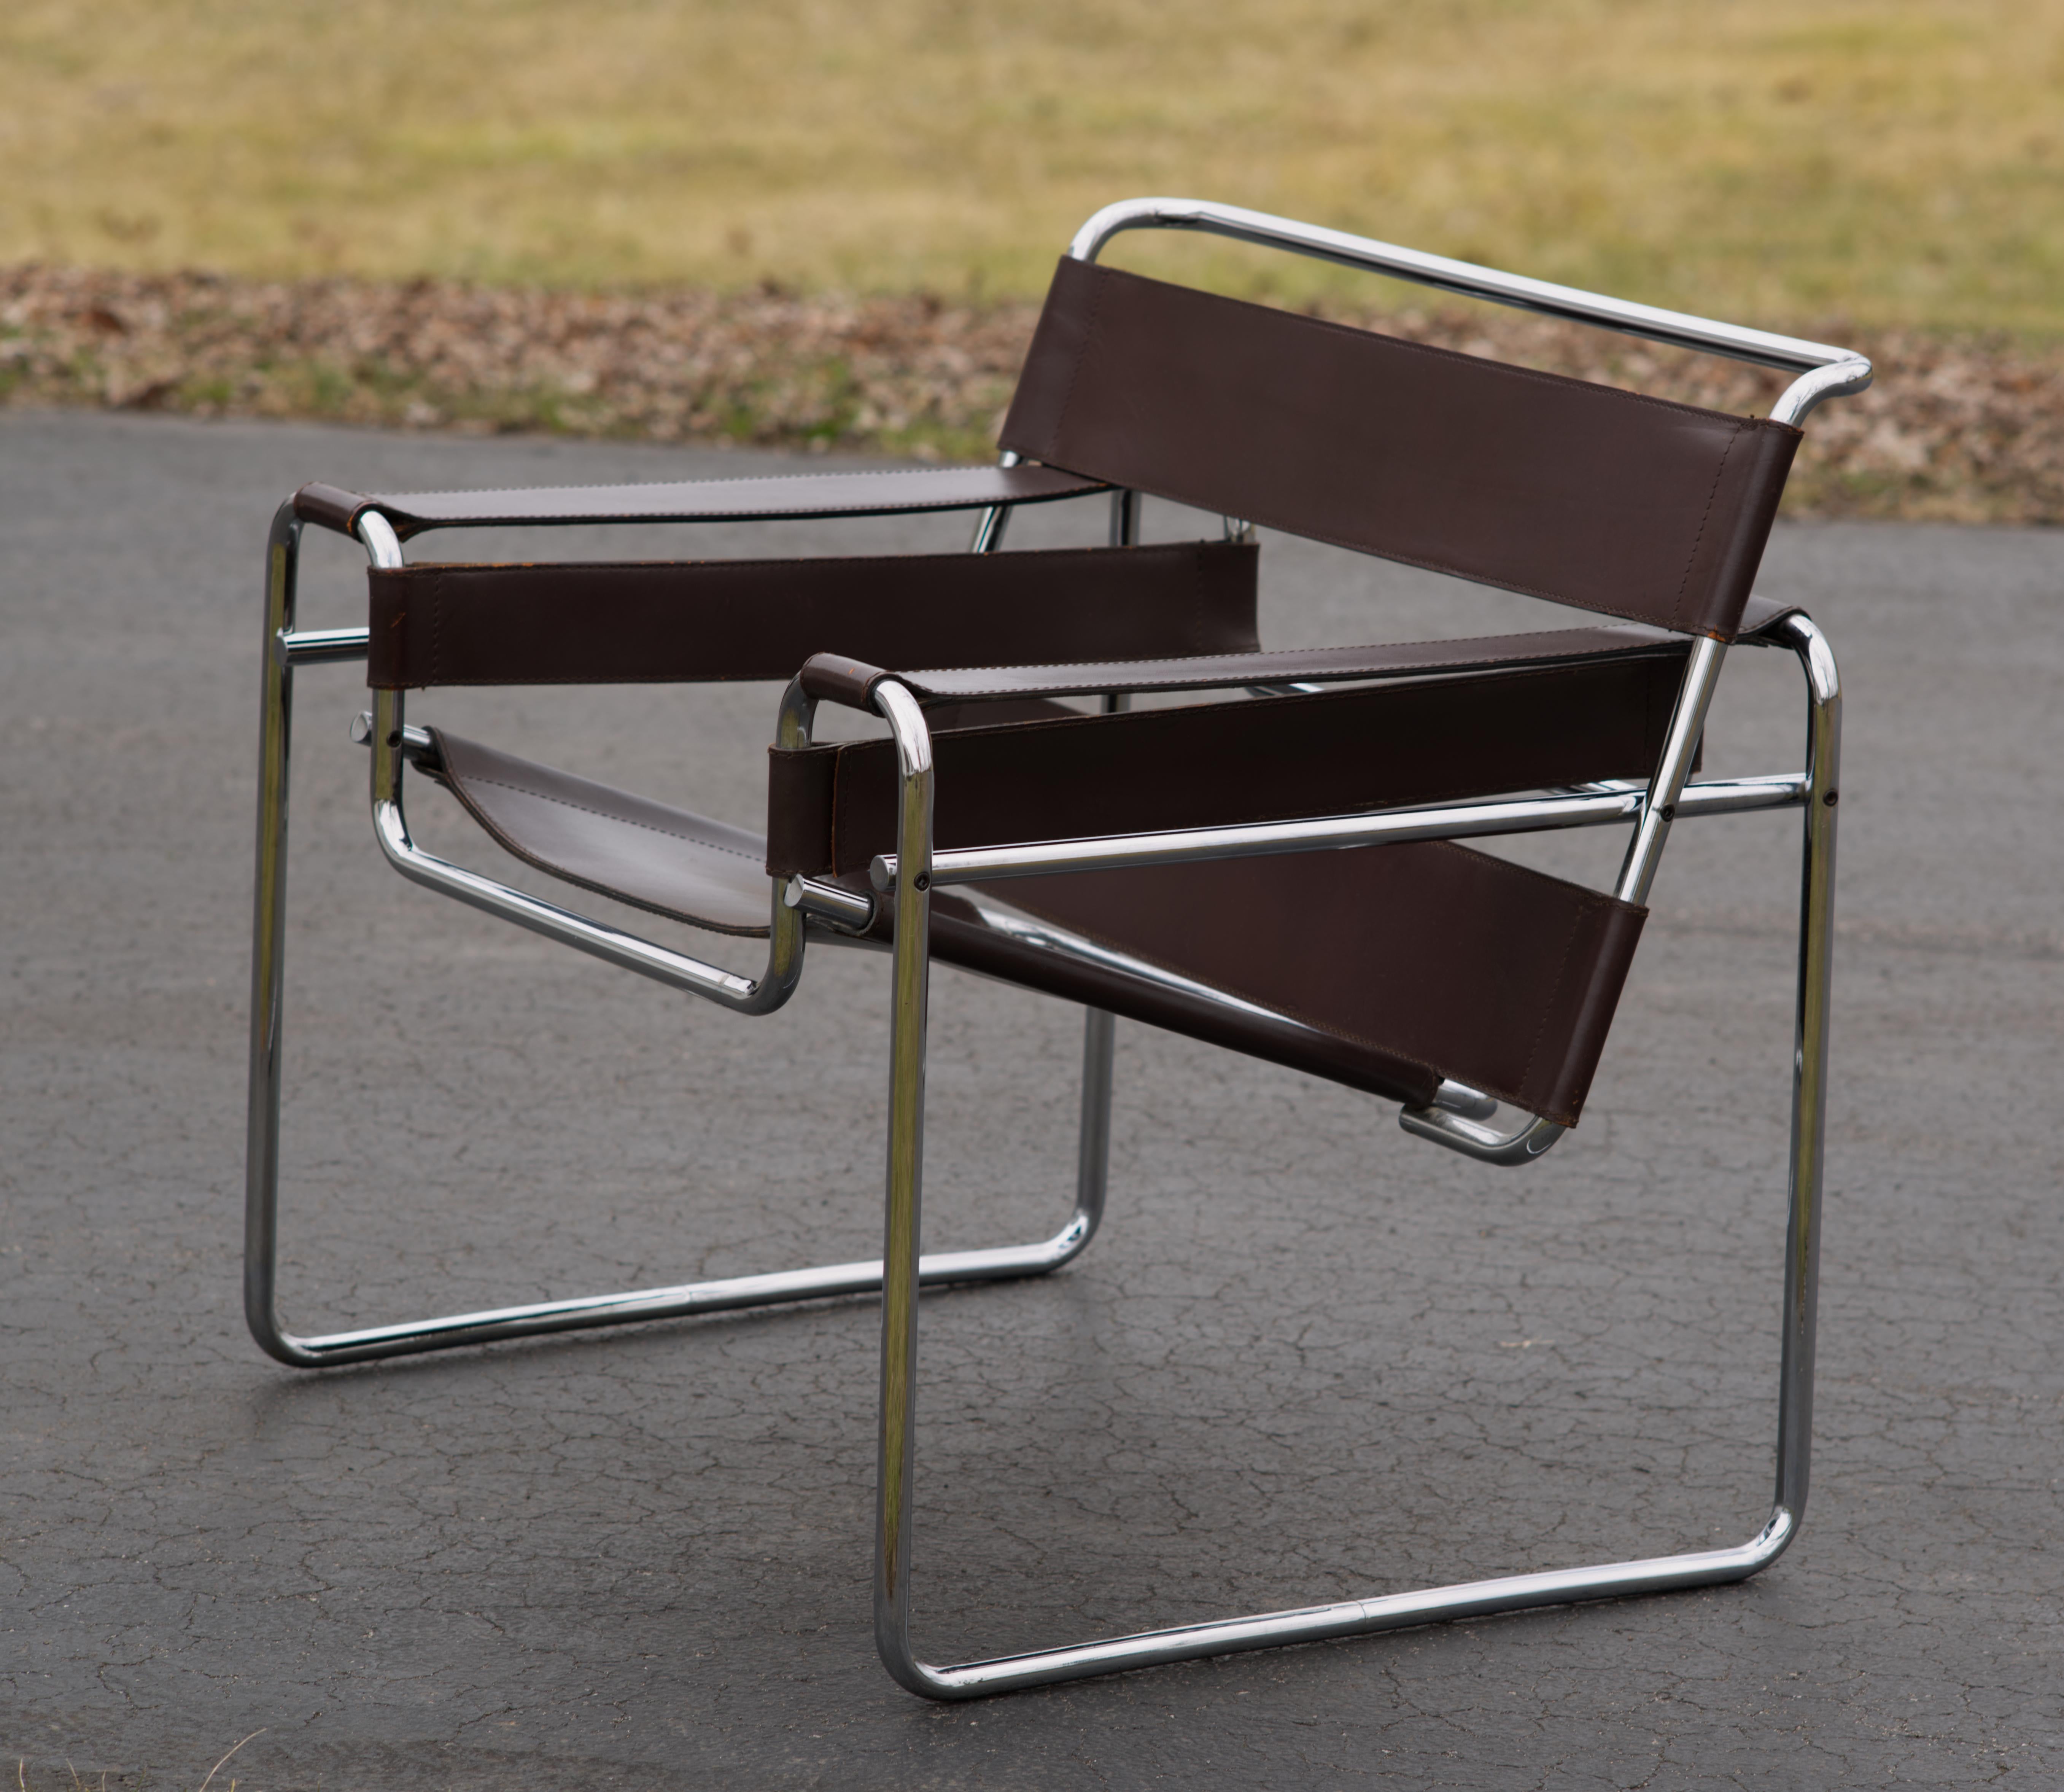 Dies ist die frühere Knolls-Version des ikonischen Wassily Lounge Chair von Marcel Breuer.
Die Nähte sind durch und durch solide. 
Das Leder hat ein paar abgenutzte Stellen, die dem Alter des Stuhls entsprechen. 
Auf der rechten Seite der vorderen